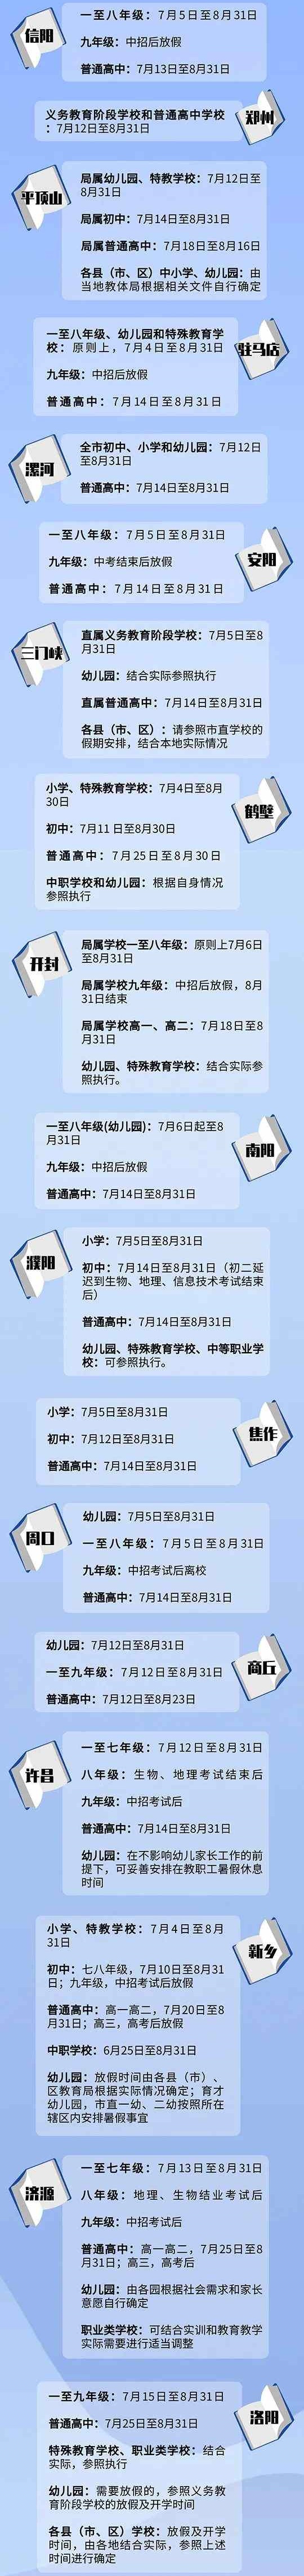 2020河南省内各中小学暑假放假及秋季开学时间汇总